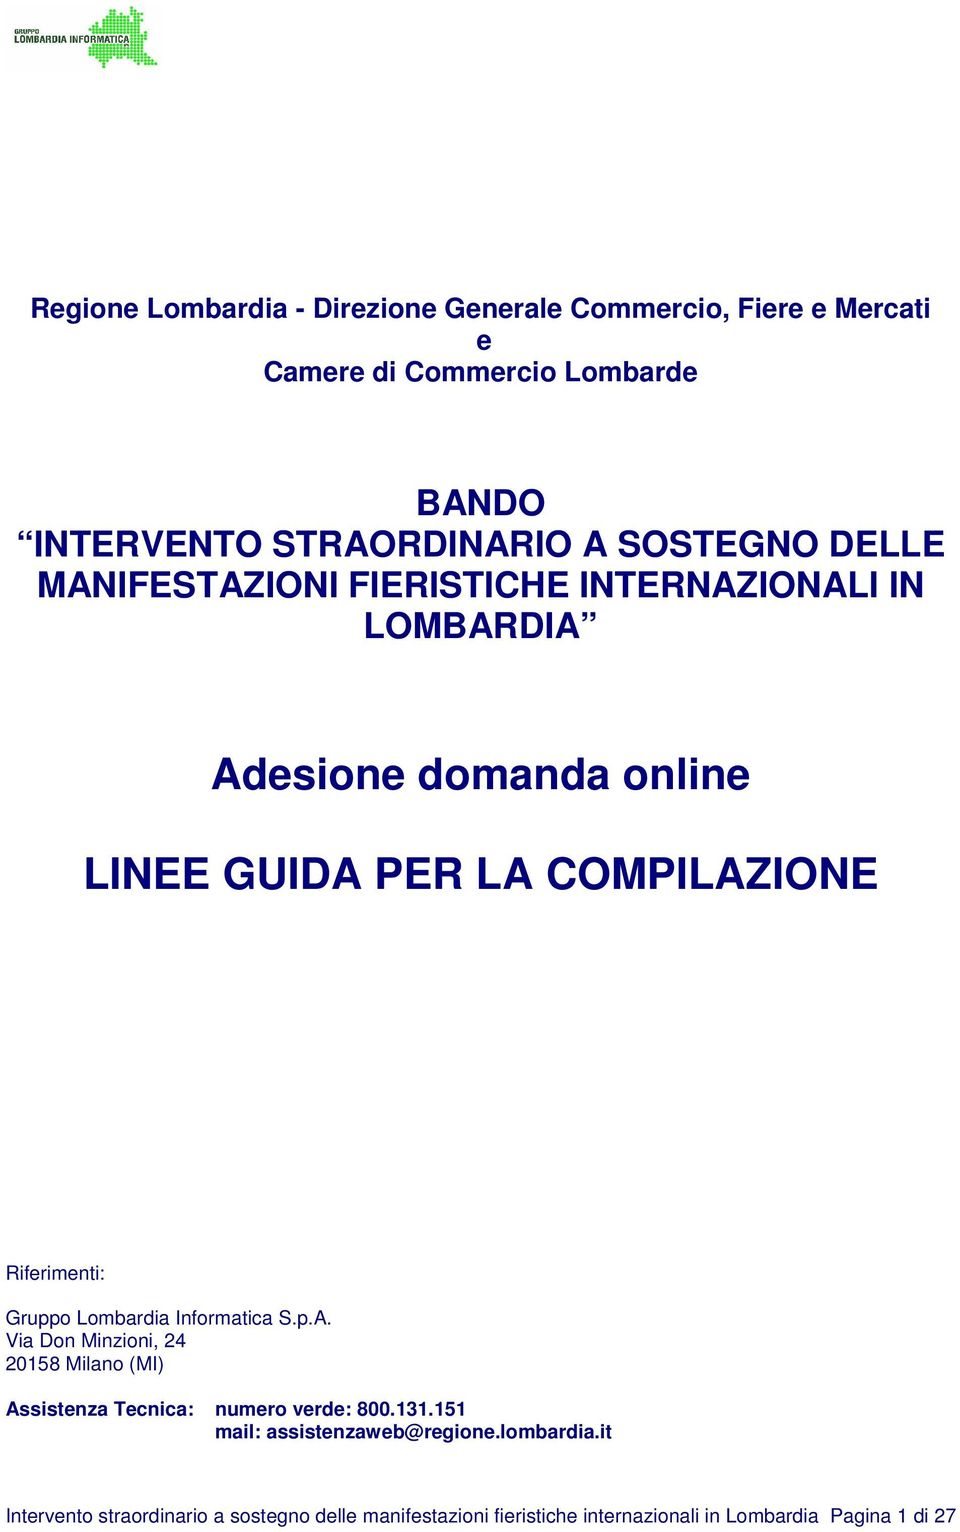 Riferimenti: Gruppo Lombardia Informatica S.p.A. Via Don Minzioni, 24 20158 Milano (MI) Assistenza Tecnica: numero verde: 800.131.